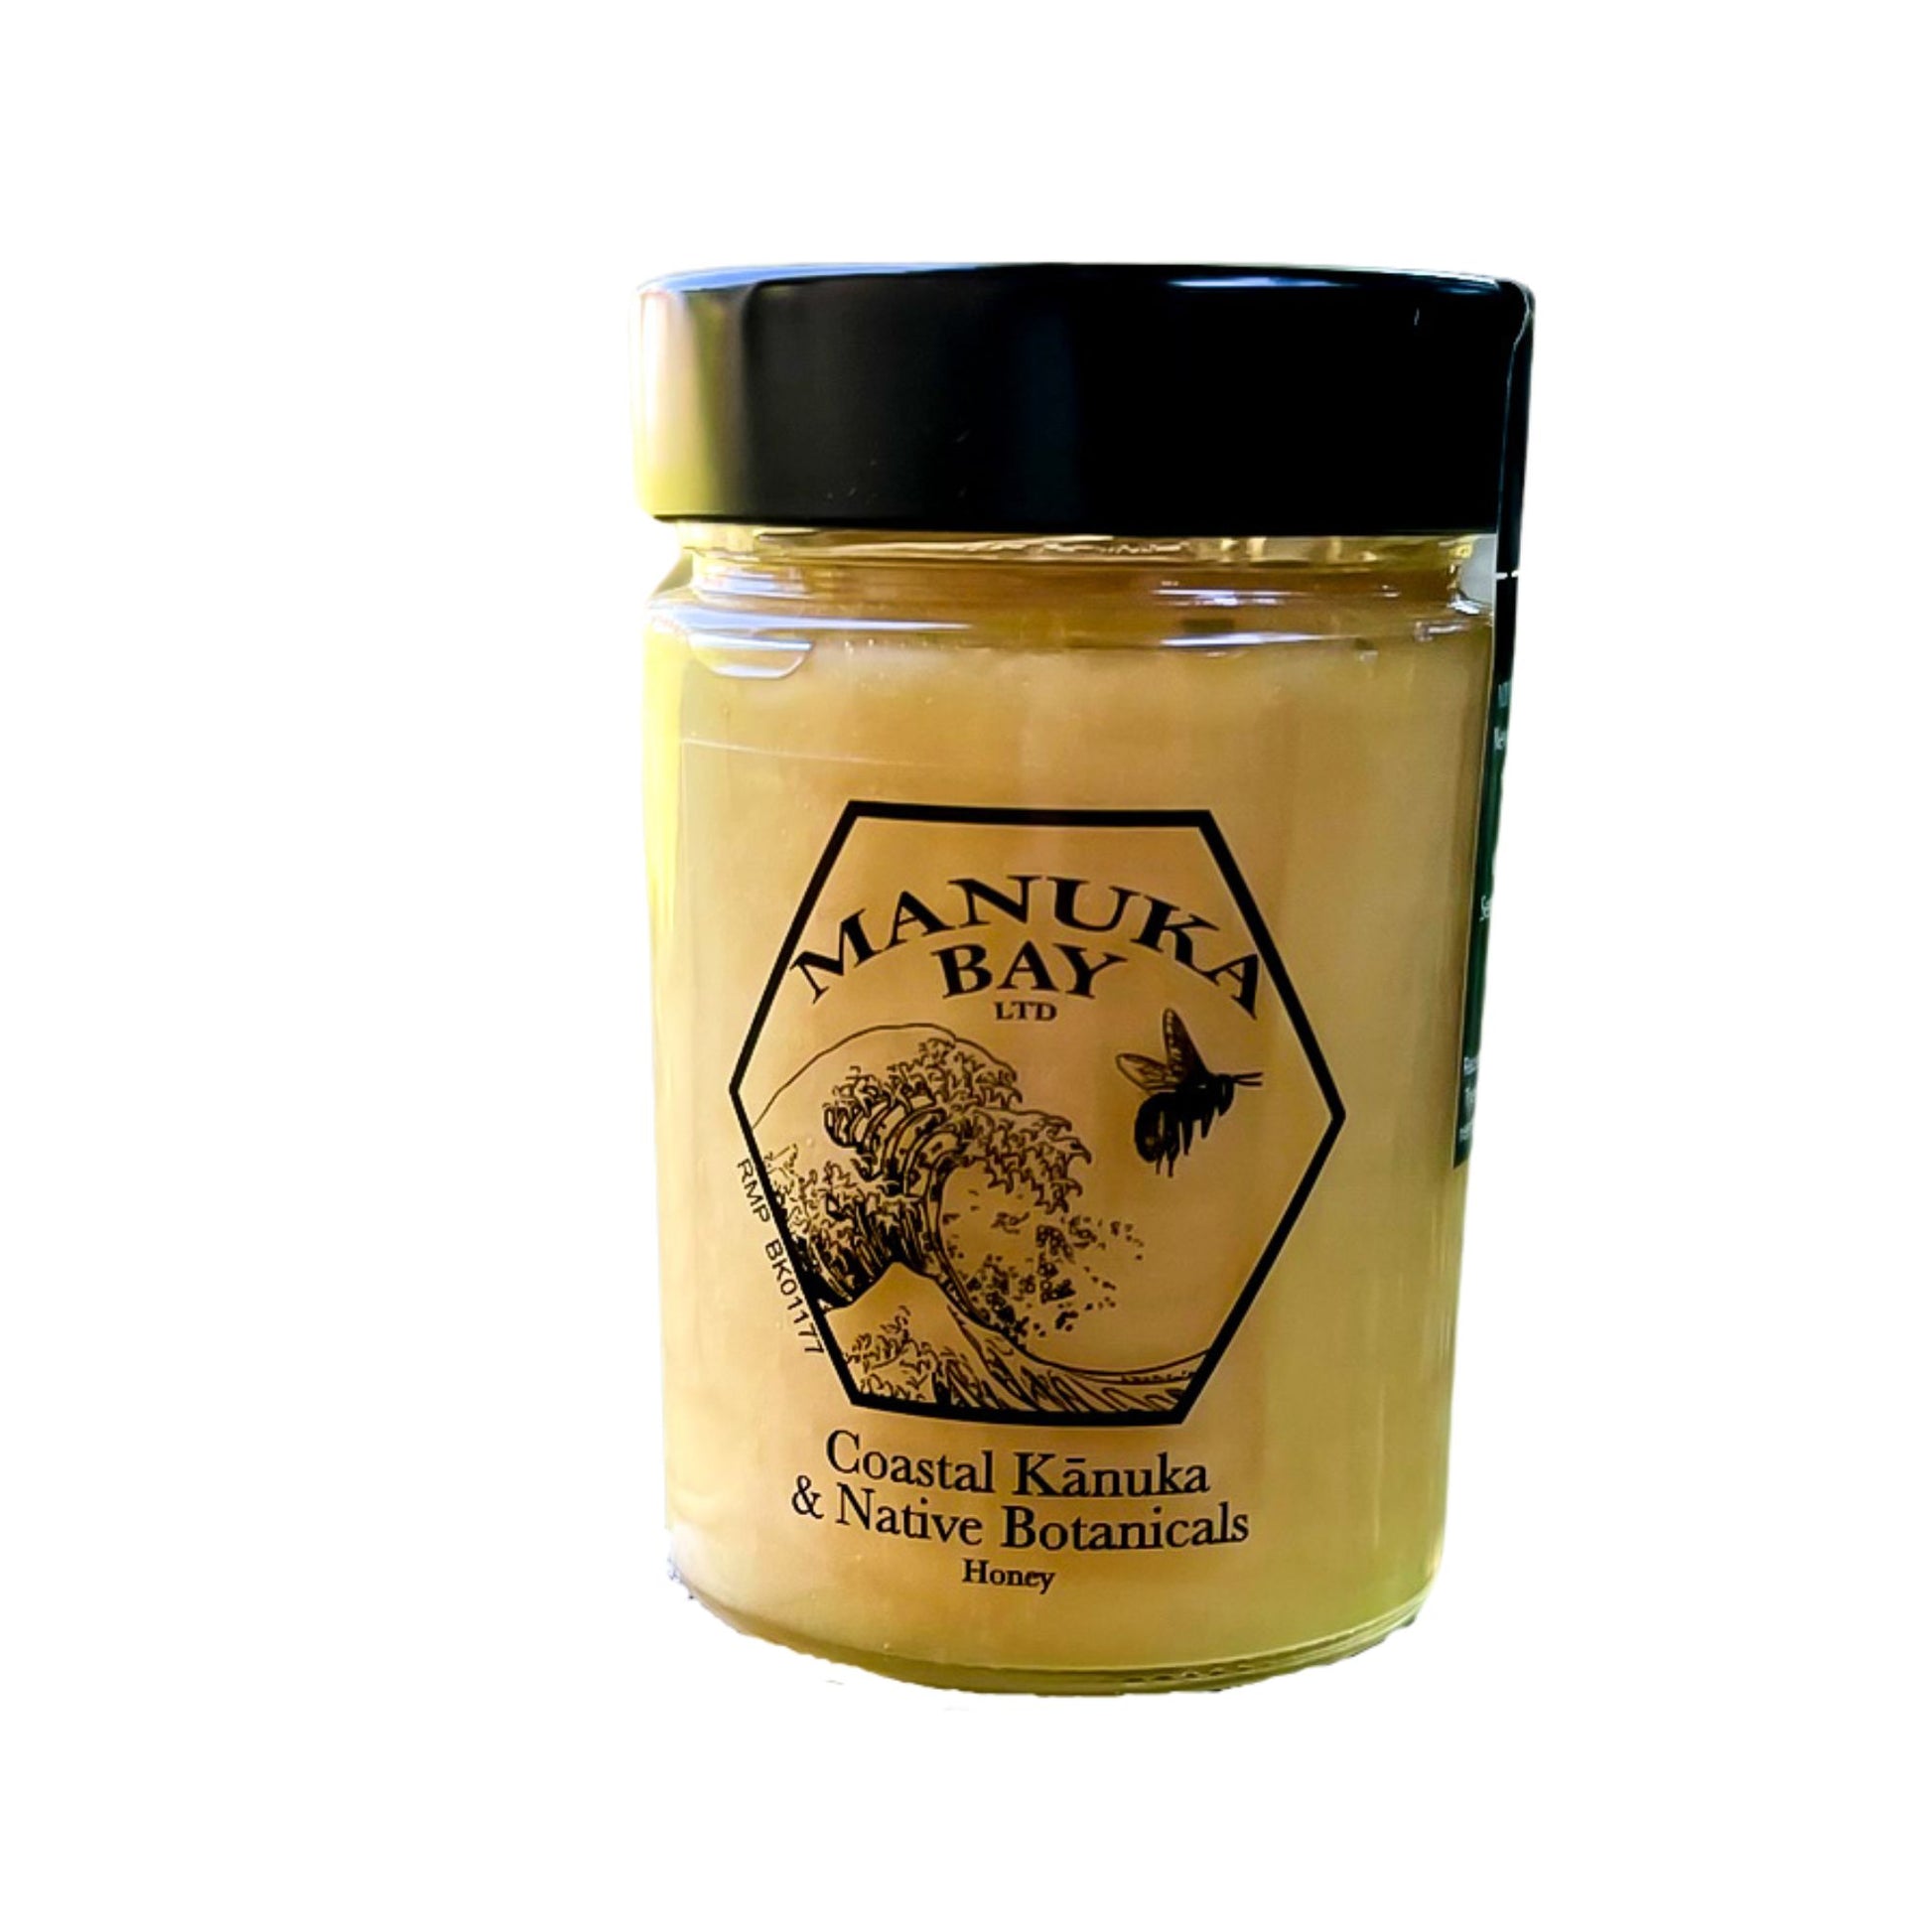 Jar of Manuka Bay Coastal Kanuka and native bush honey